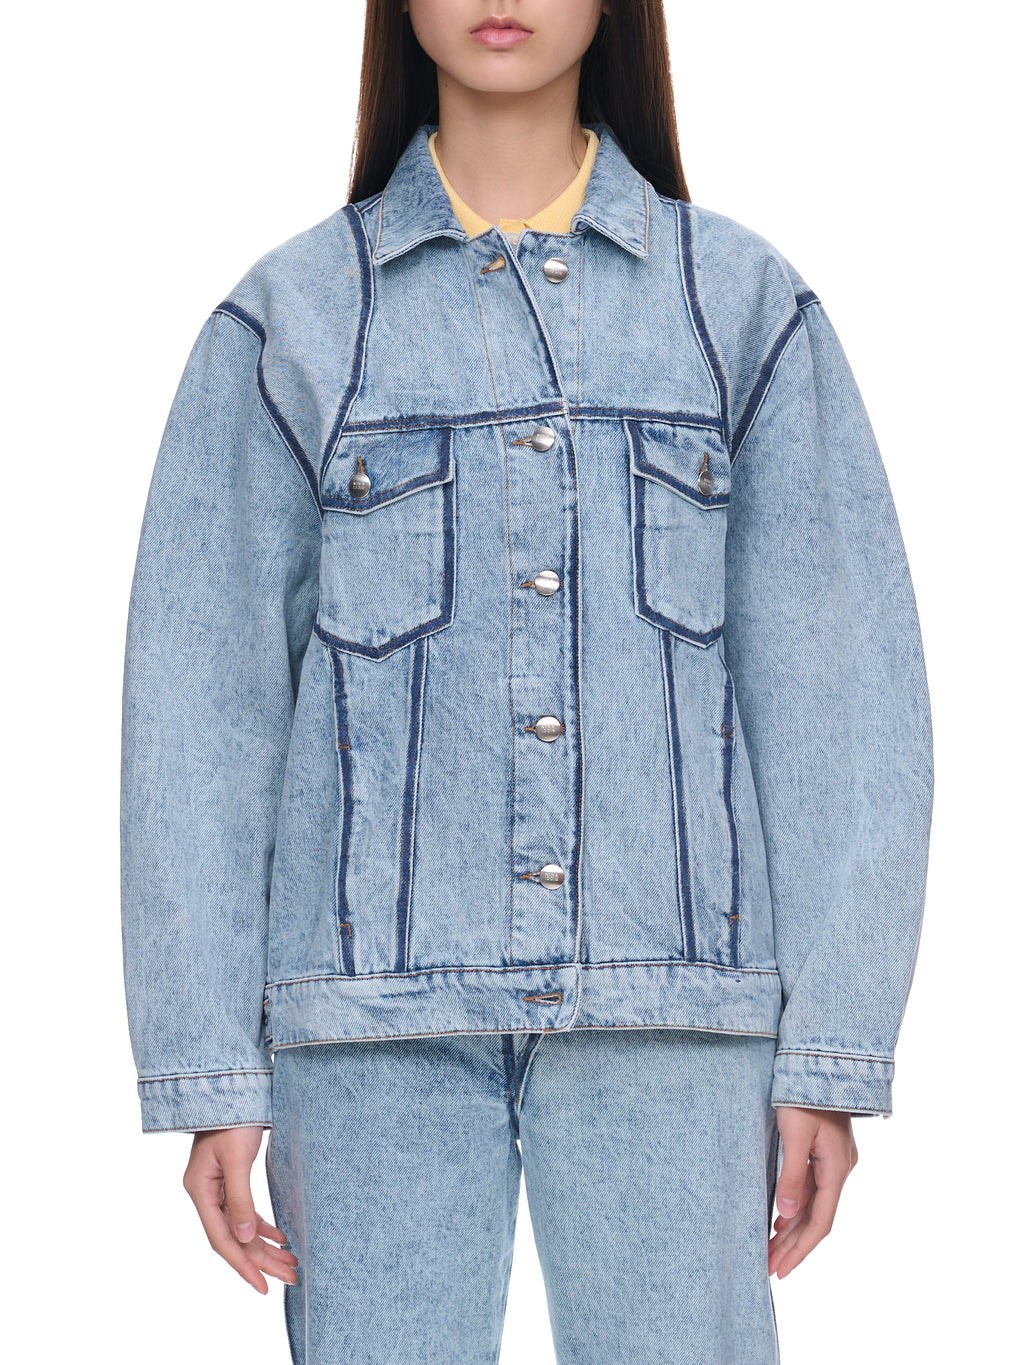 Jean patch jacket dress – Portia's Fashionista Apparel